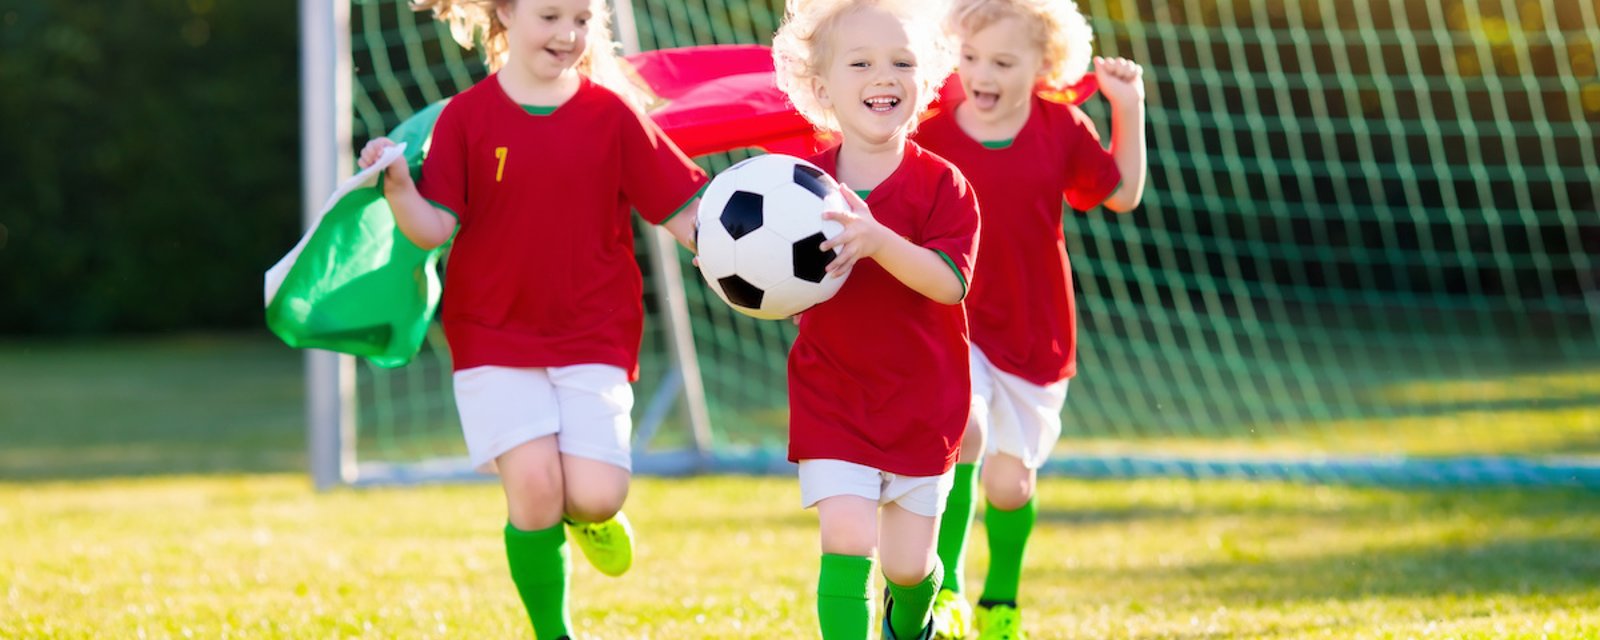 Selon une étude montréalaise, les enfants actifs physiquement à 6 ans auront de meilleurs résultats scolaires à 12 ans